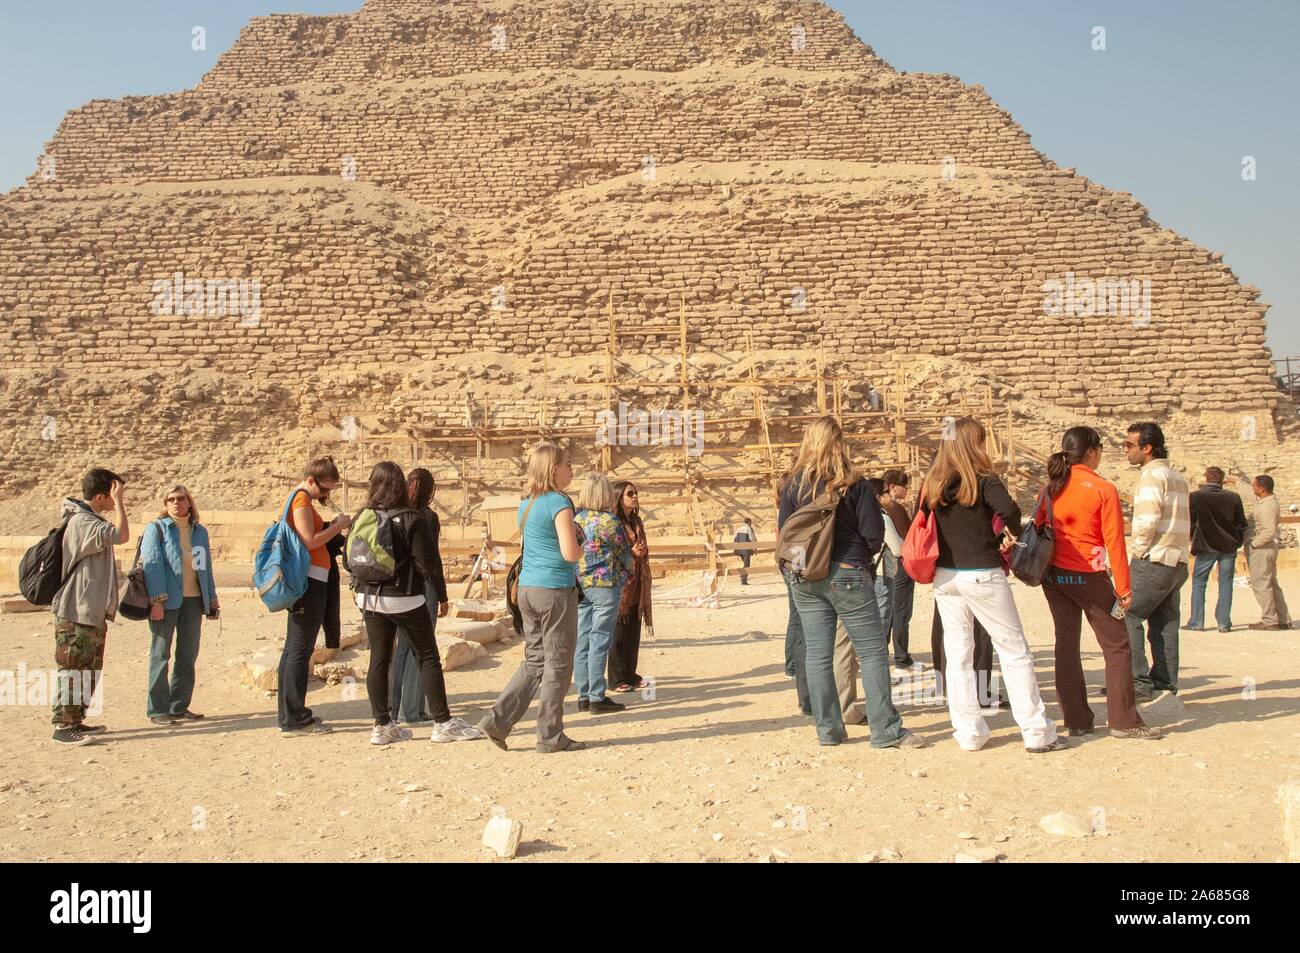 Un gruppo di studenti della Johns Hopkins University di Baltimore, Maryland, fuori in una giornata di sole, in piedi vicino a una piramide con impalcature in legno alla base di Giza in Egitto durante un programma di studio all'estero, 6 gennaio 2008. Dall'Homewood raccolta di fotografie. () Foto Stock